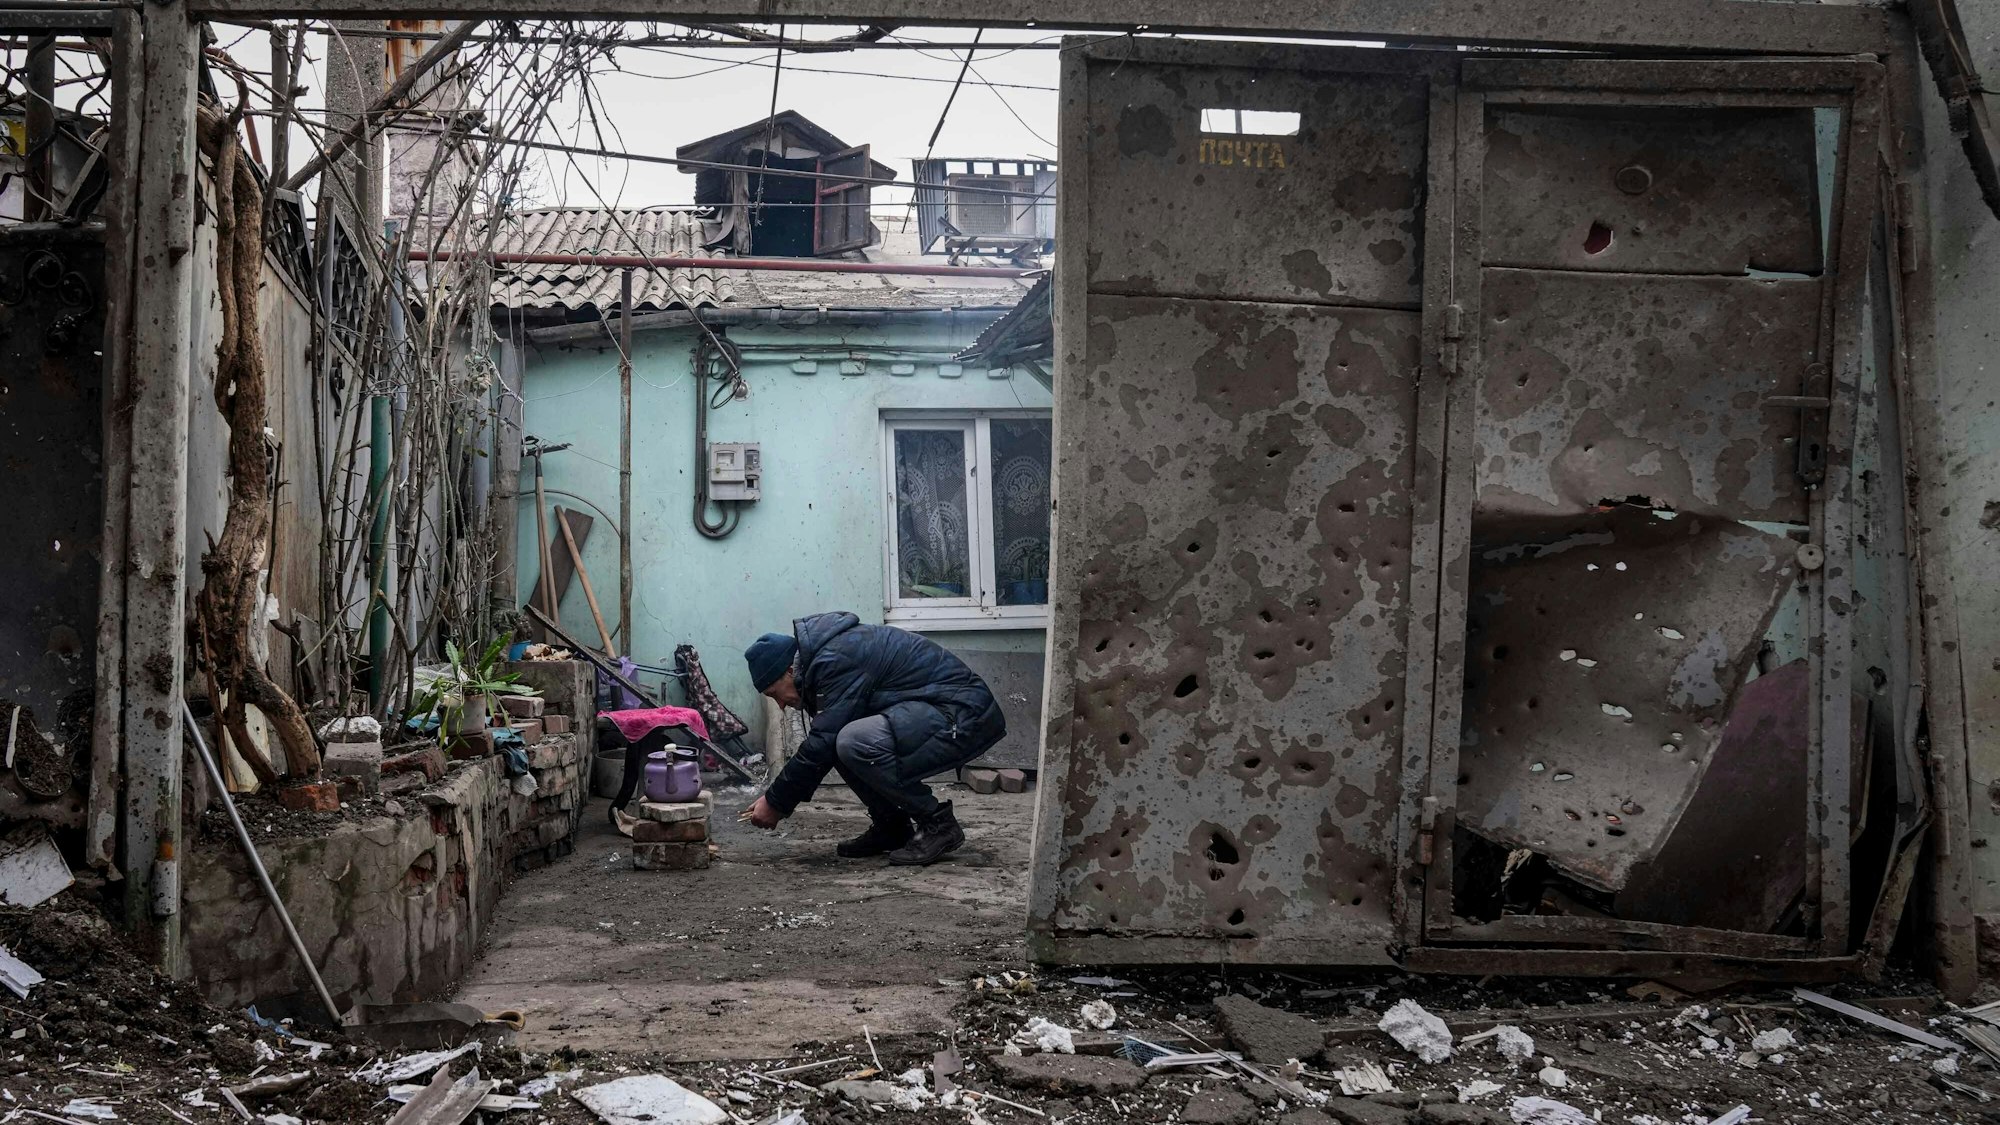 Im von russischen Truppen belagerten Mariupol leiden die Menschen derzeit besonders schlimm: Es gibt kein Strom, kein Wasser, kein Gas. Jetzt wird von einem Mädchen berichtet, das unter Trümmern verdurstet ist.